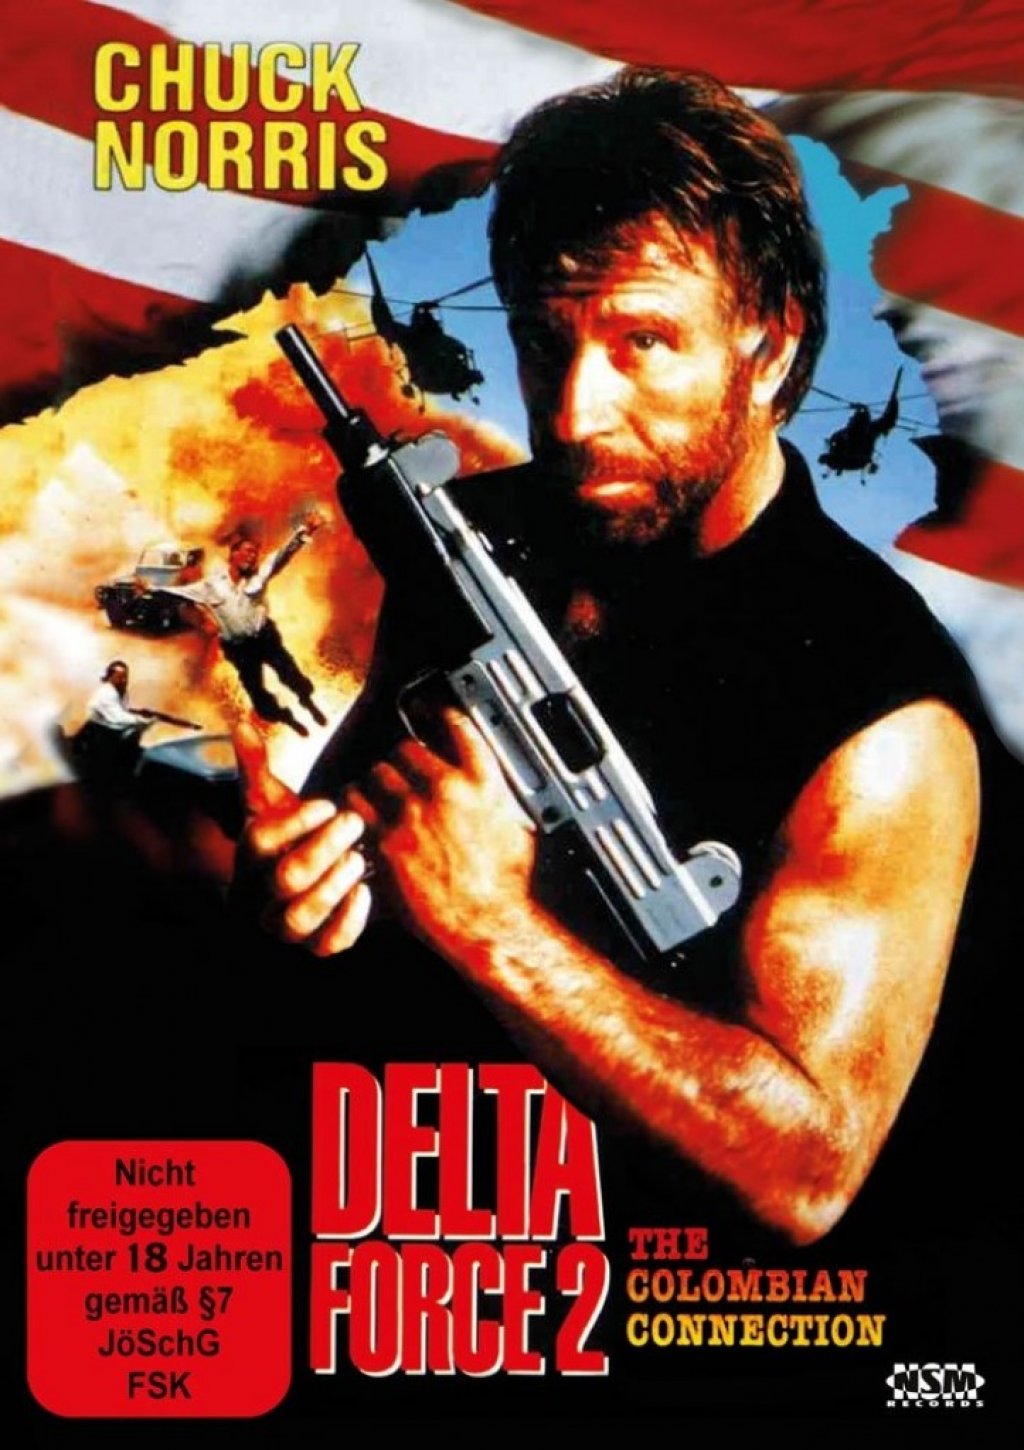 delta force 2 movie online free